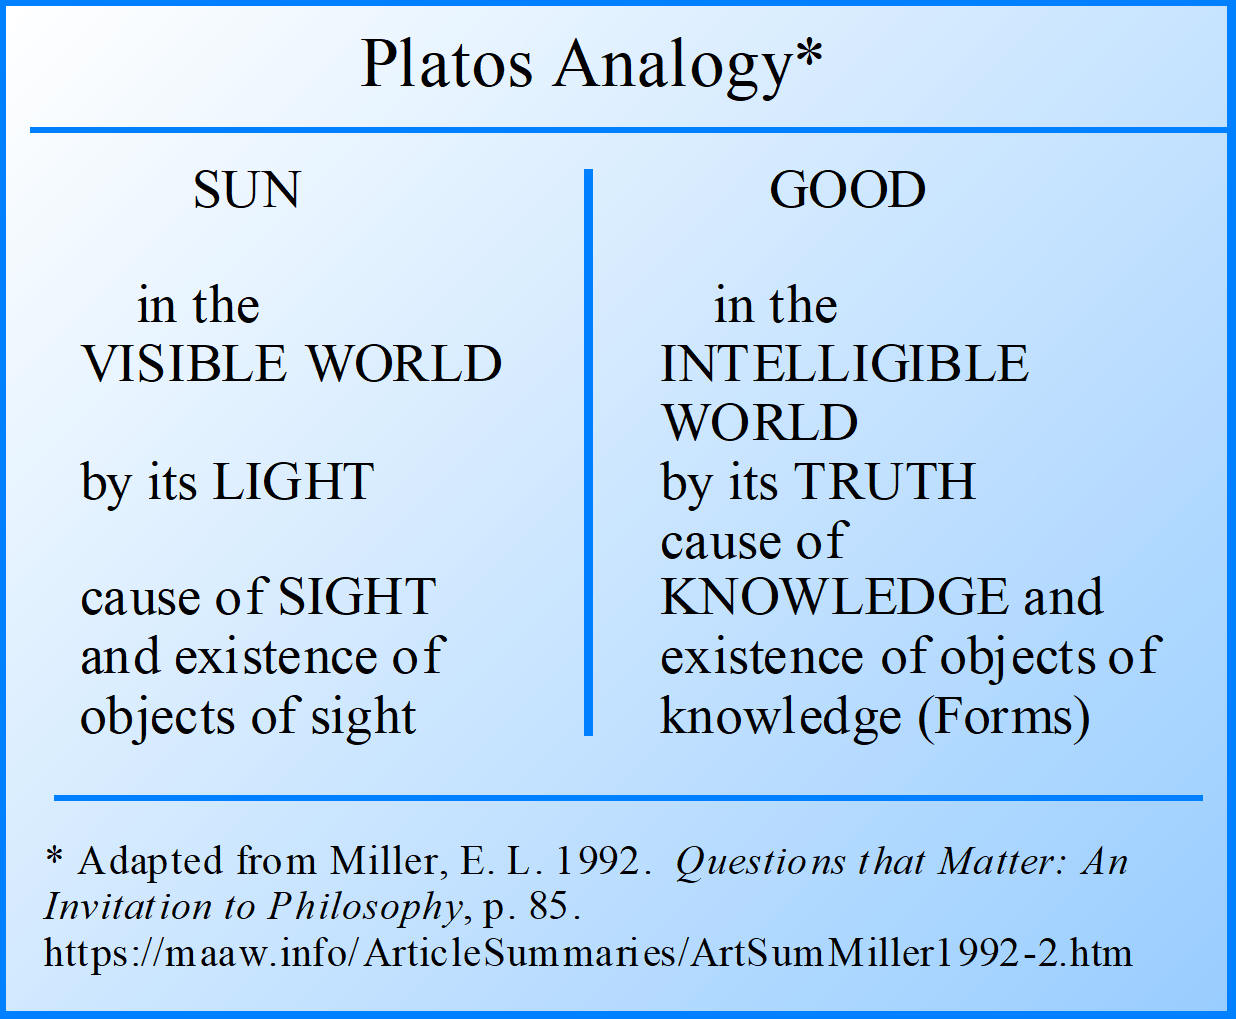 Platos Analogy: The Sun and Good